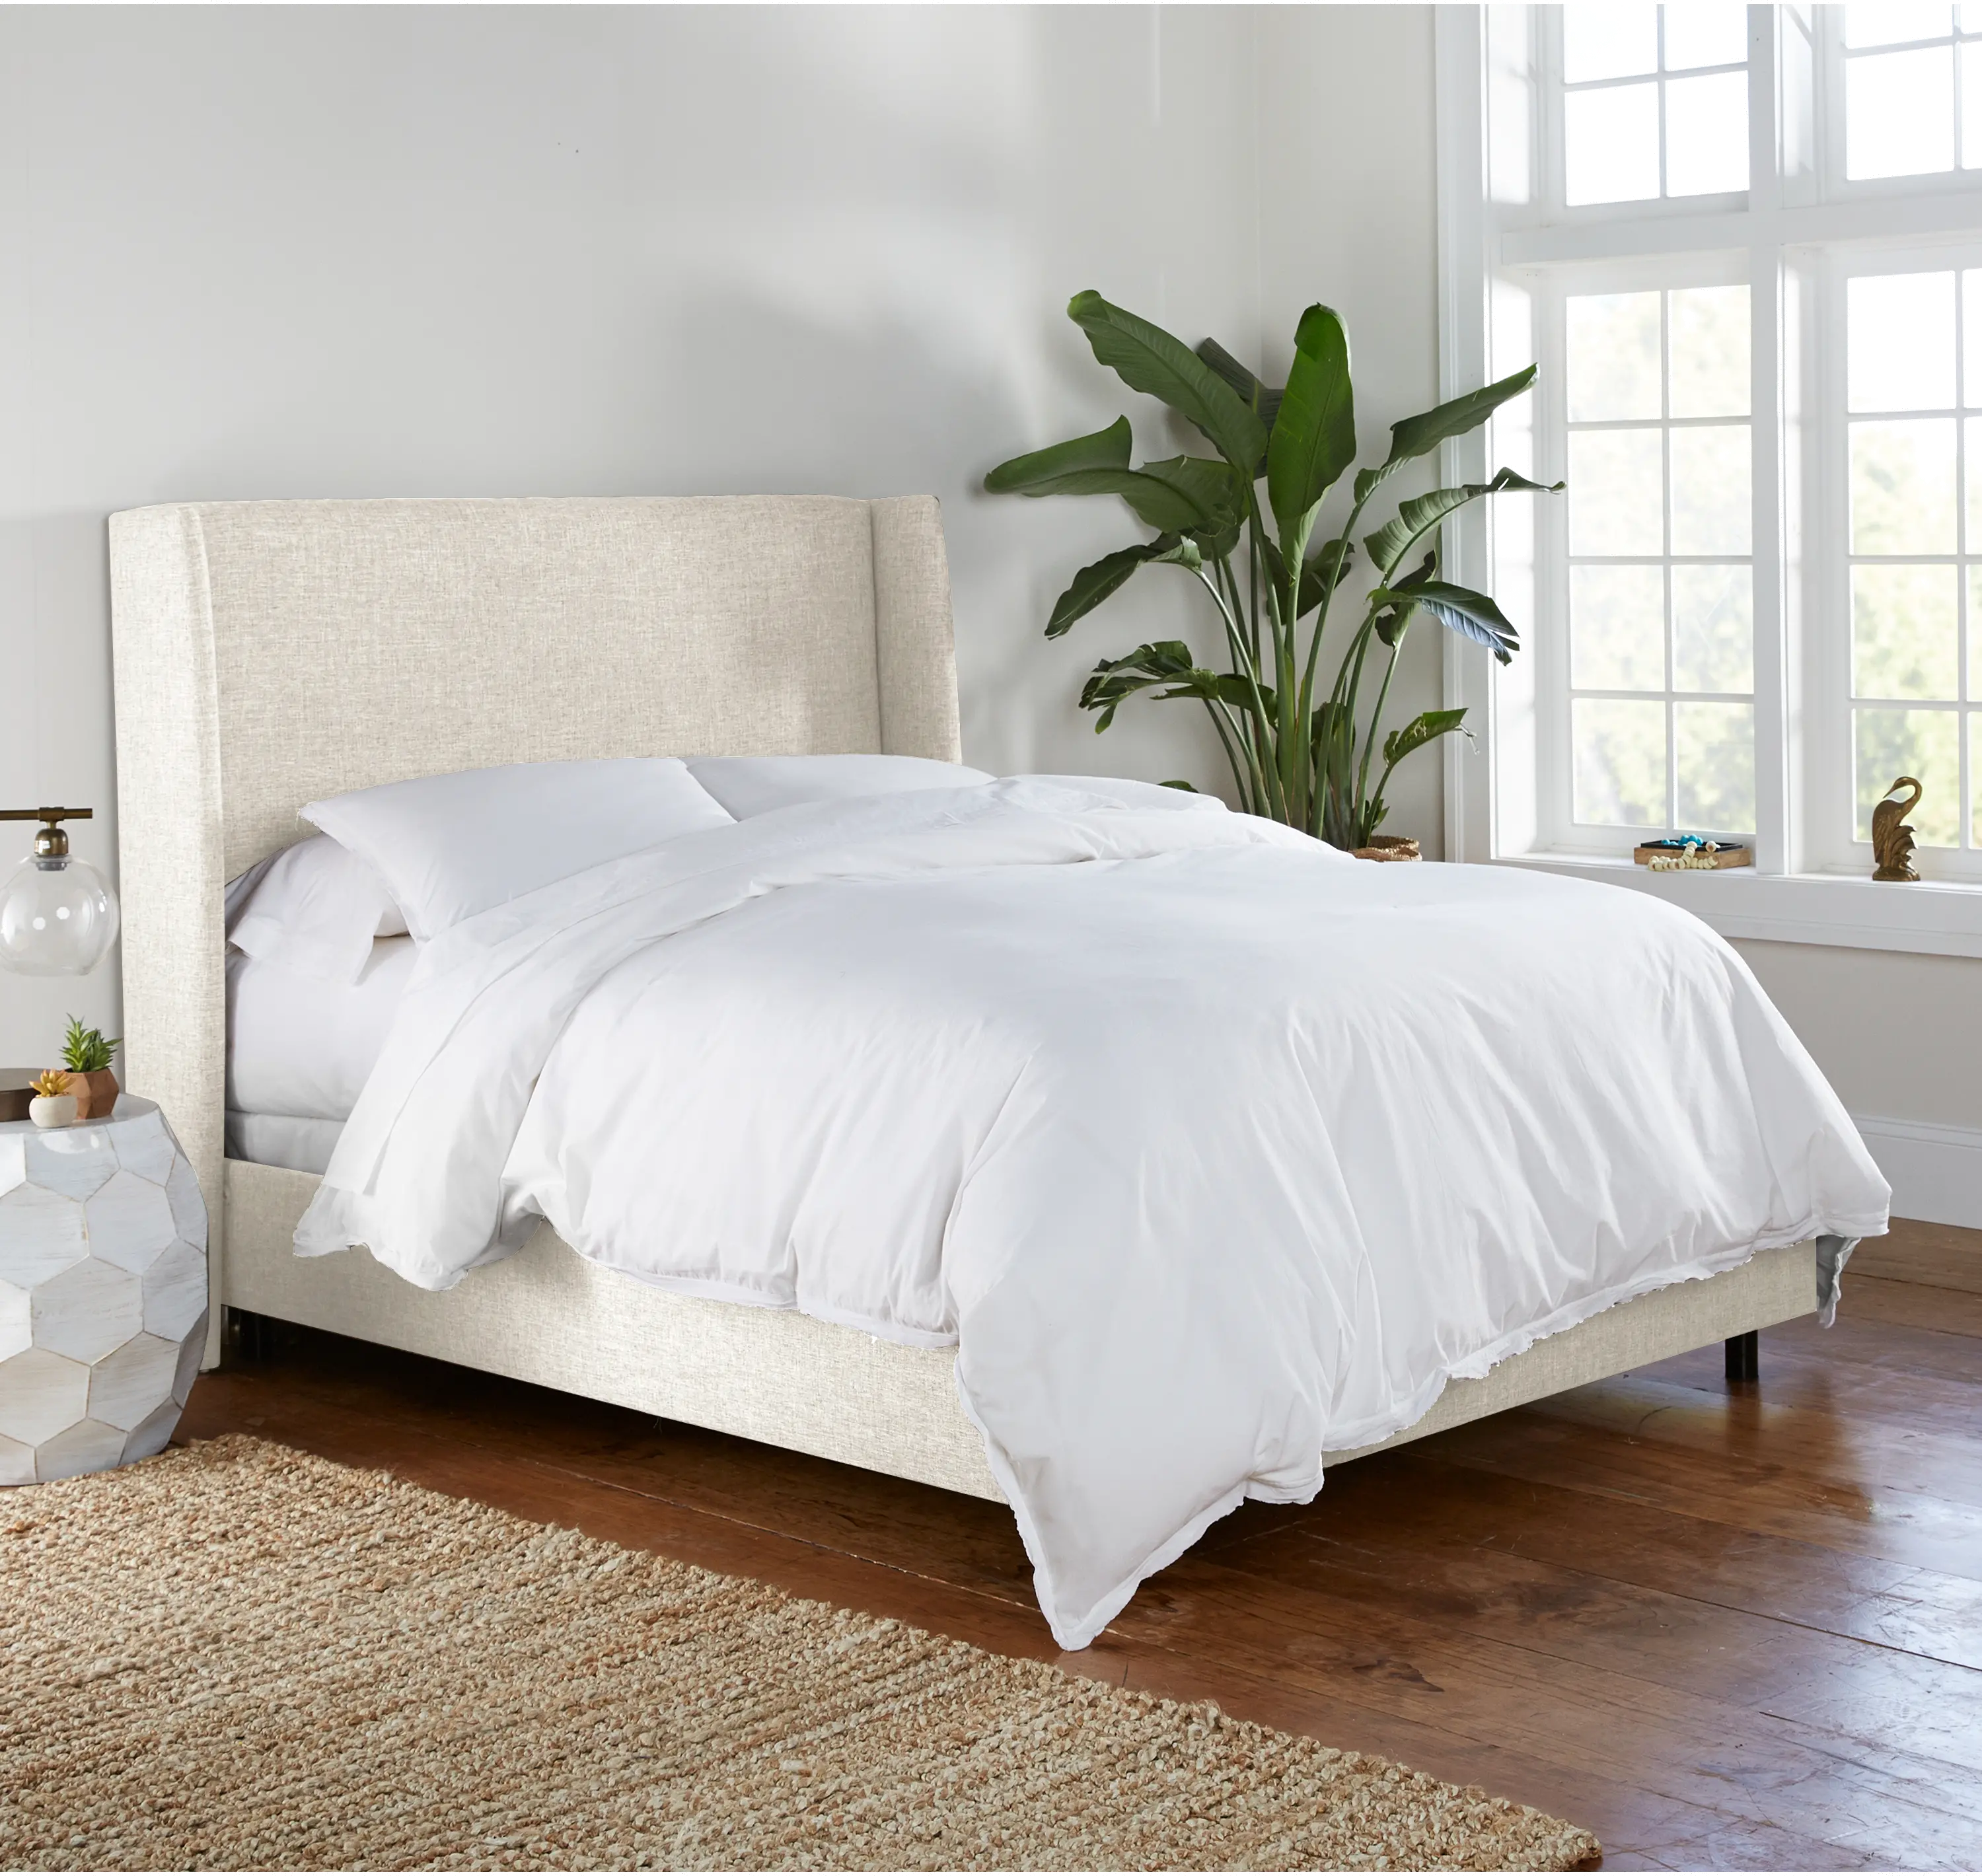 Sasha White Curved Wingback Full Bed - Skyline Furniture